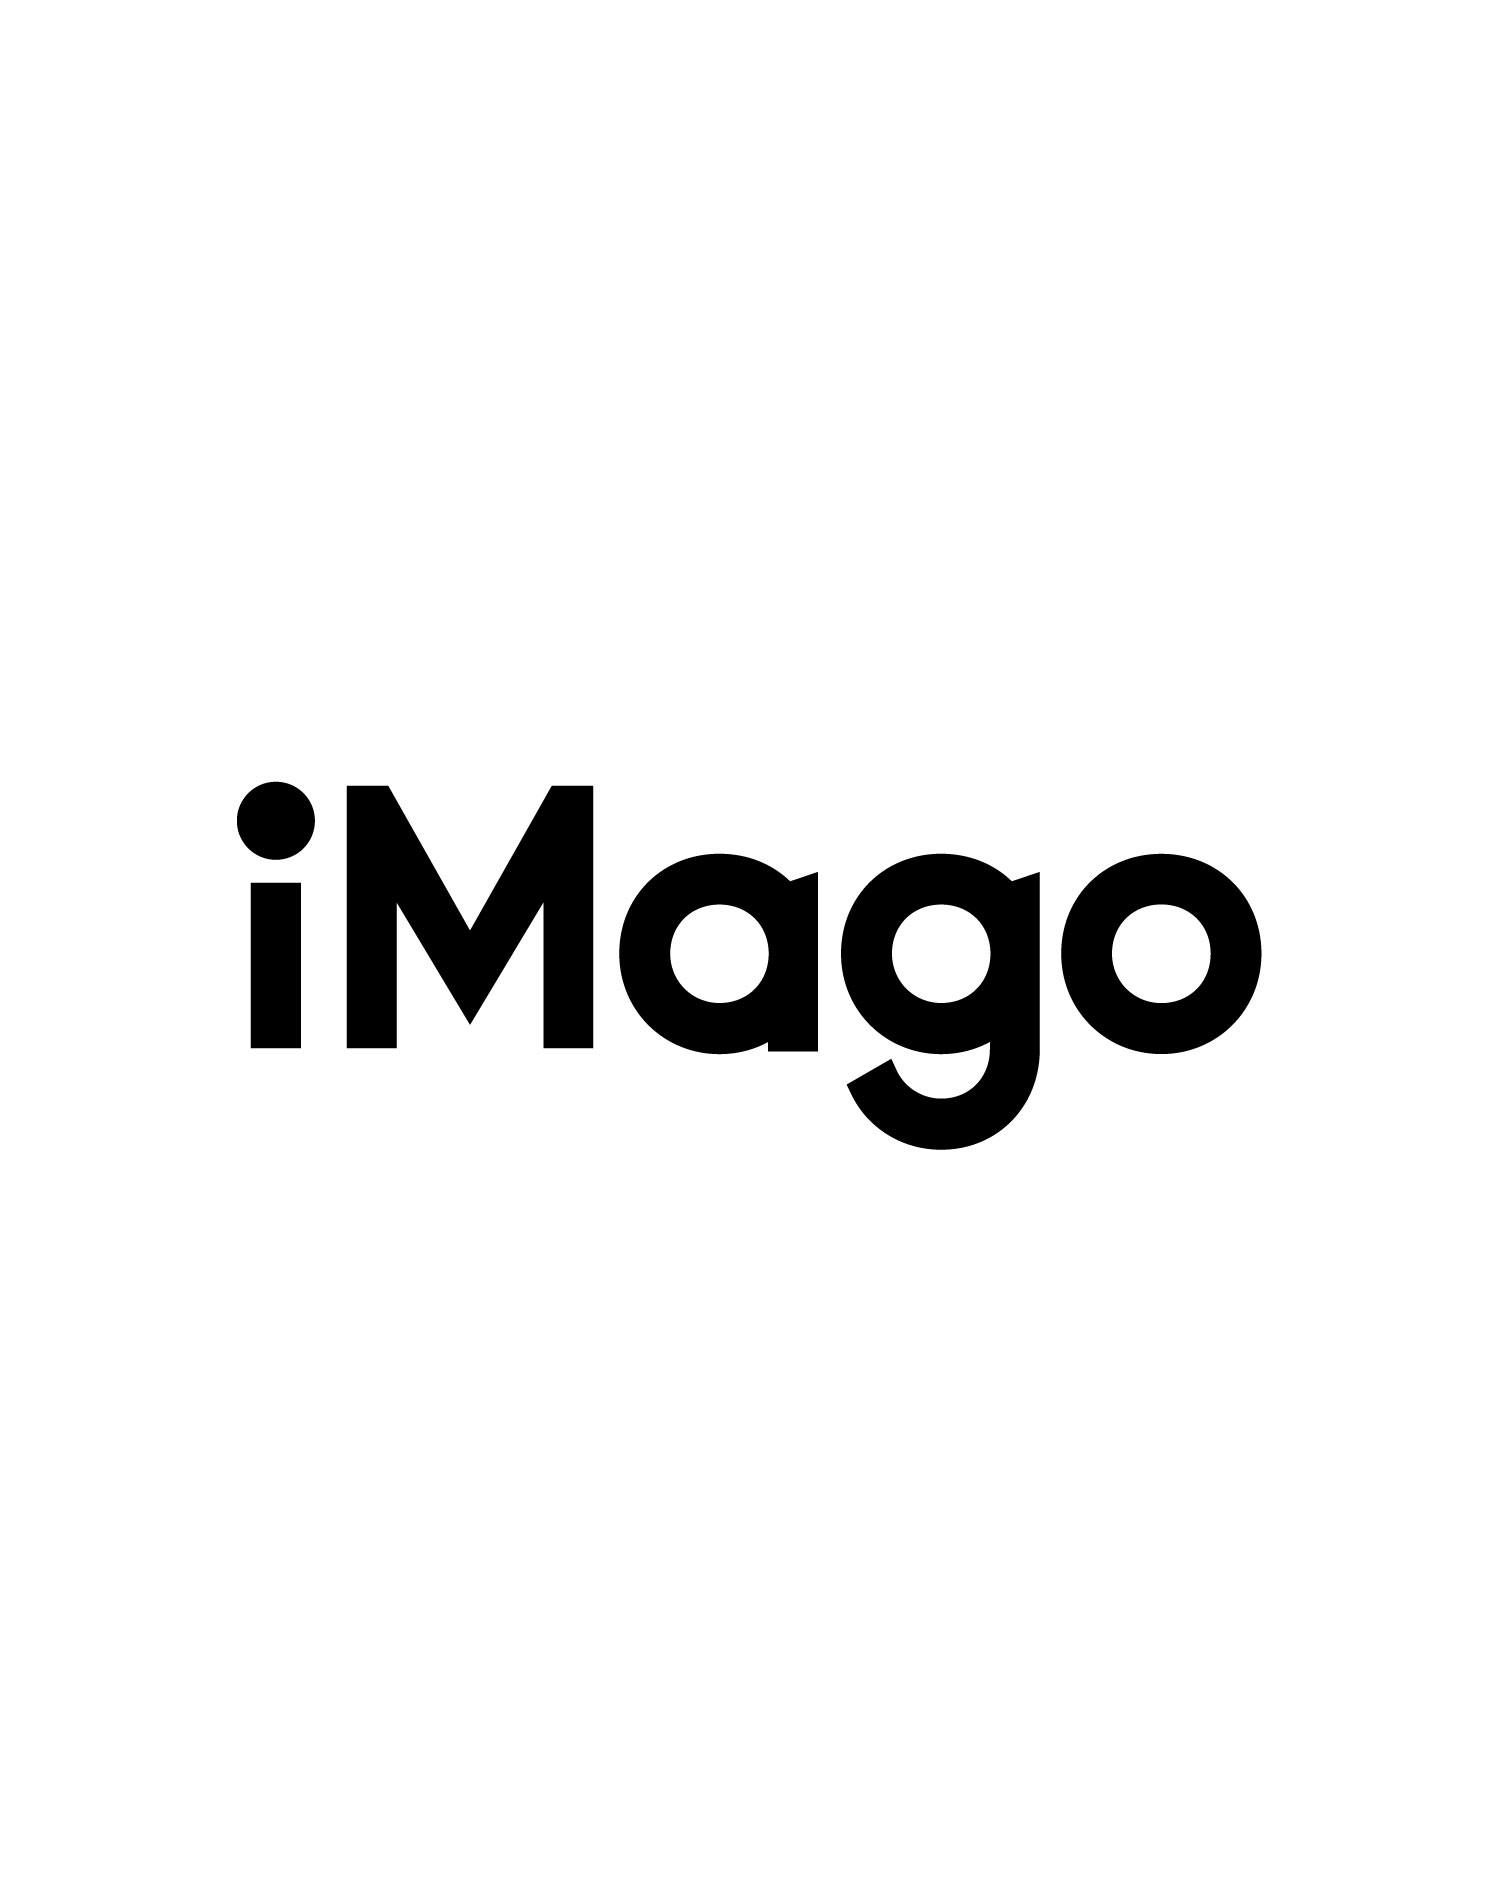 iMago